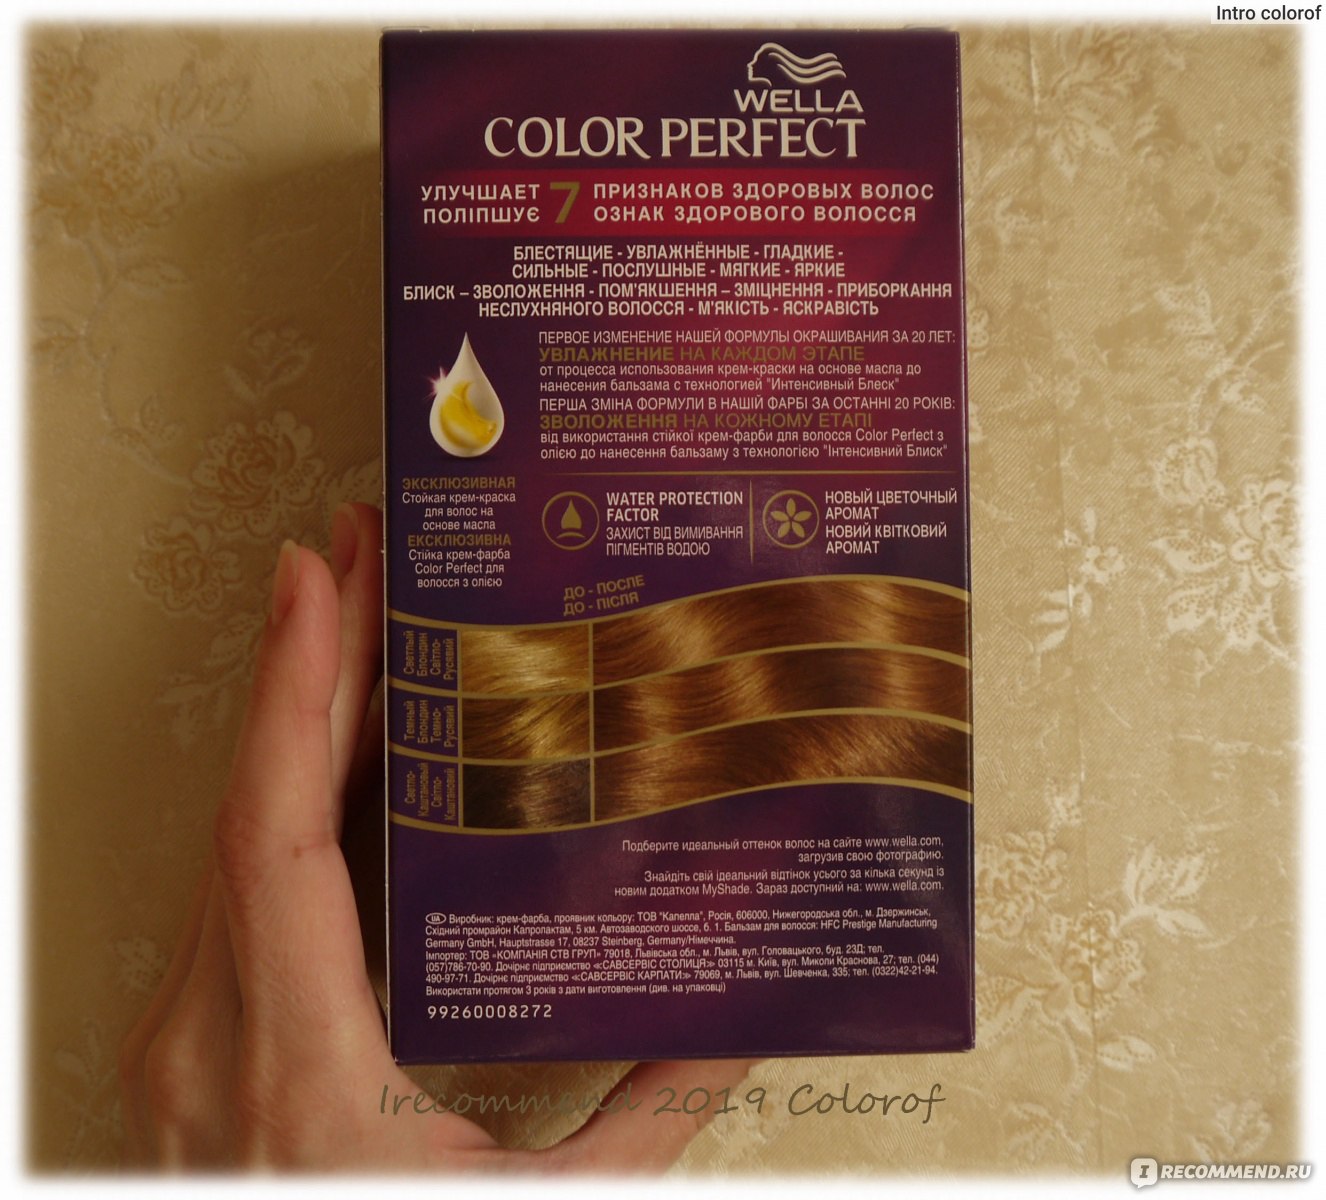 Стойкая крем-краска для волос Wella Color Perfect фото